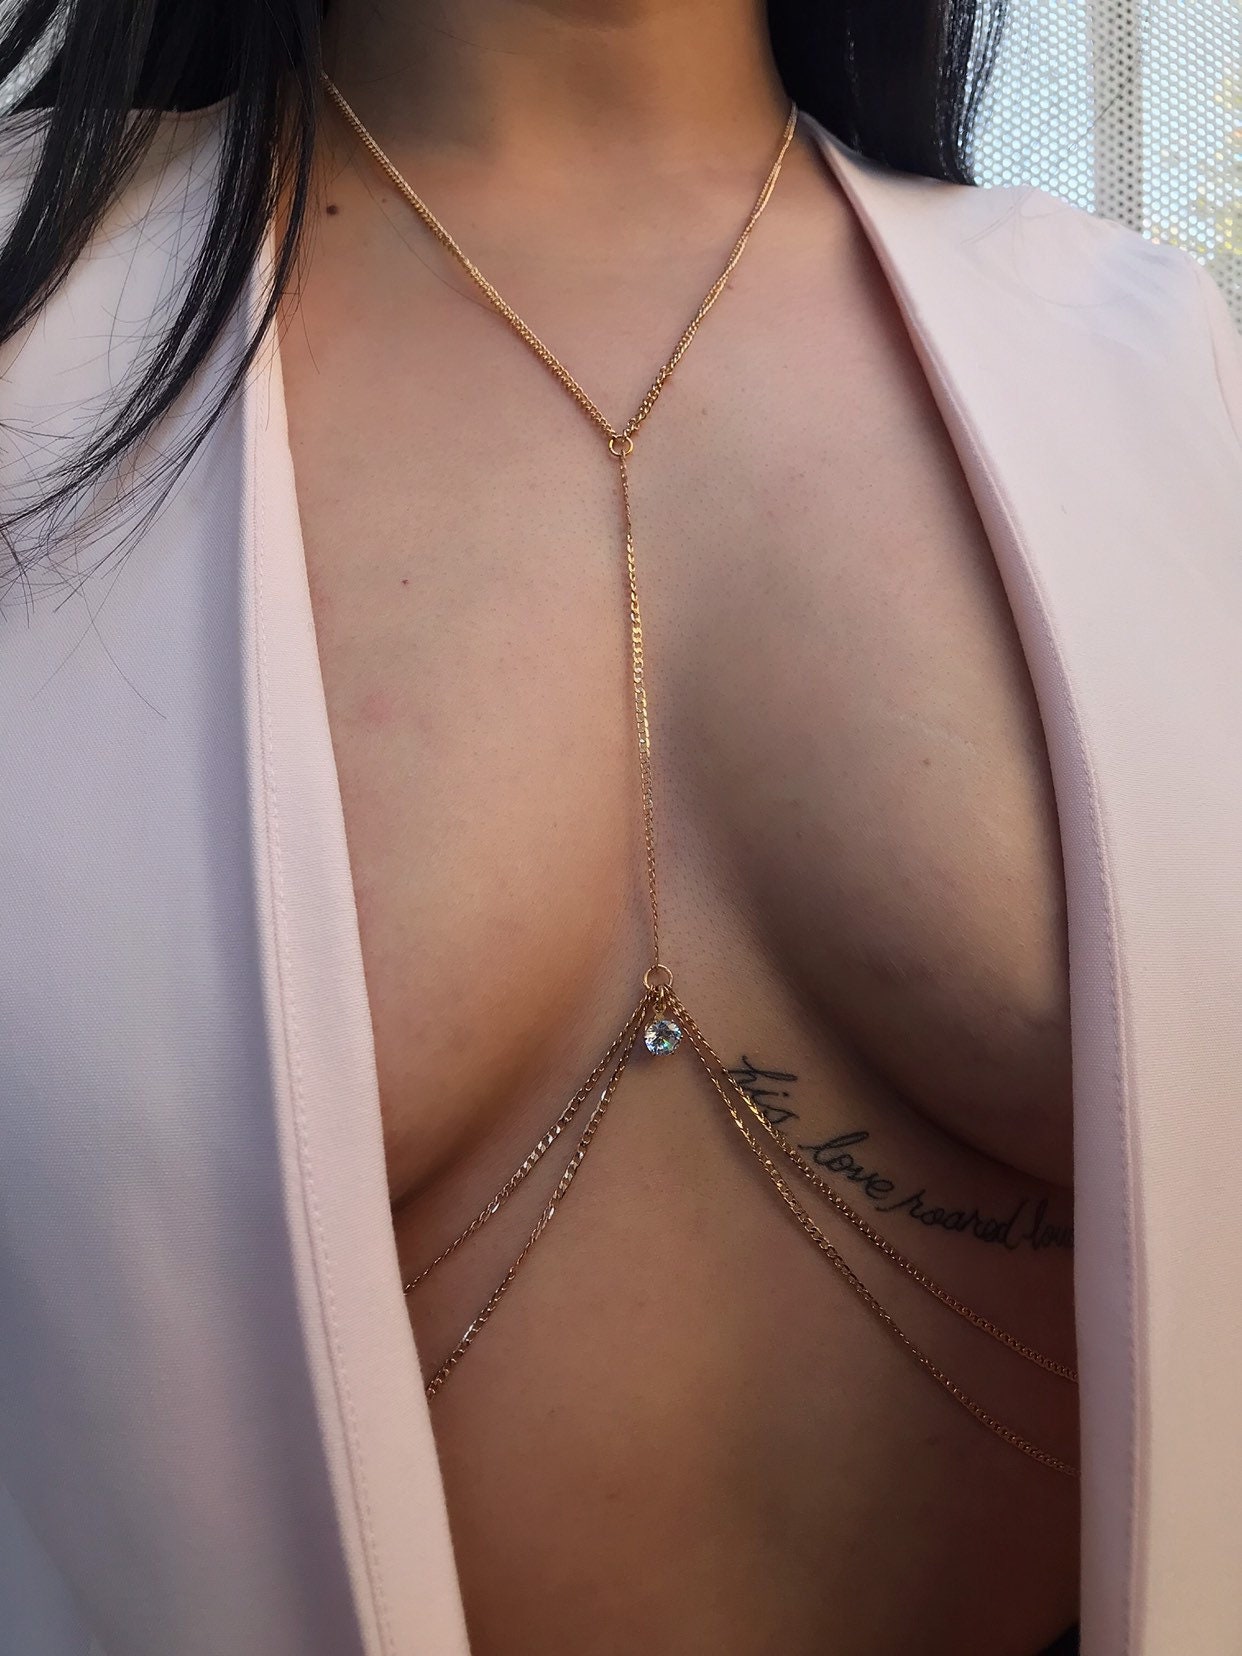 Layered Body Chain, Bralette Jewelry, Bikini Body Jewelry